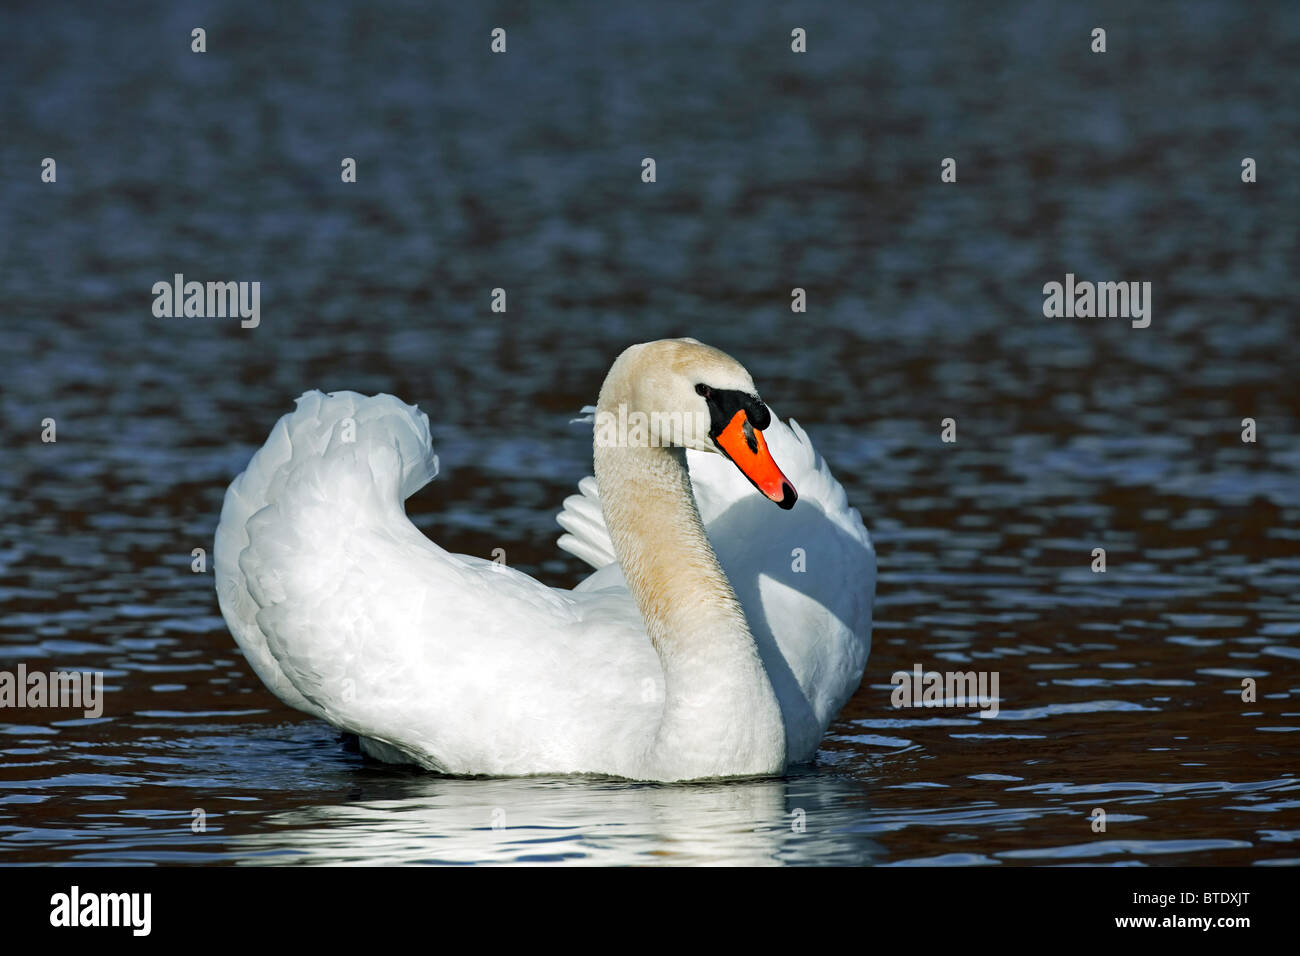 Cisne (Cygnus olor) en el lago mostrando busking amenaza pantalla, Alemania Foto de stock